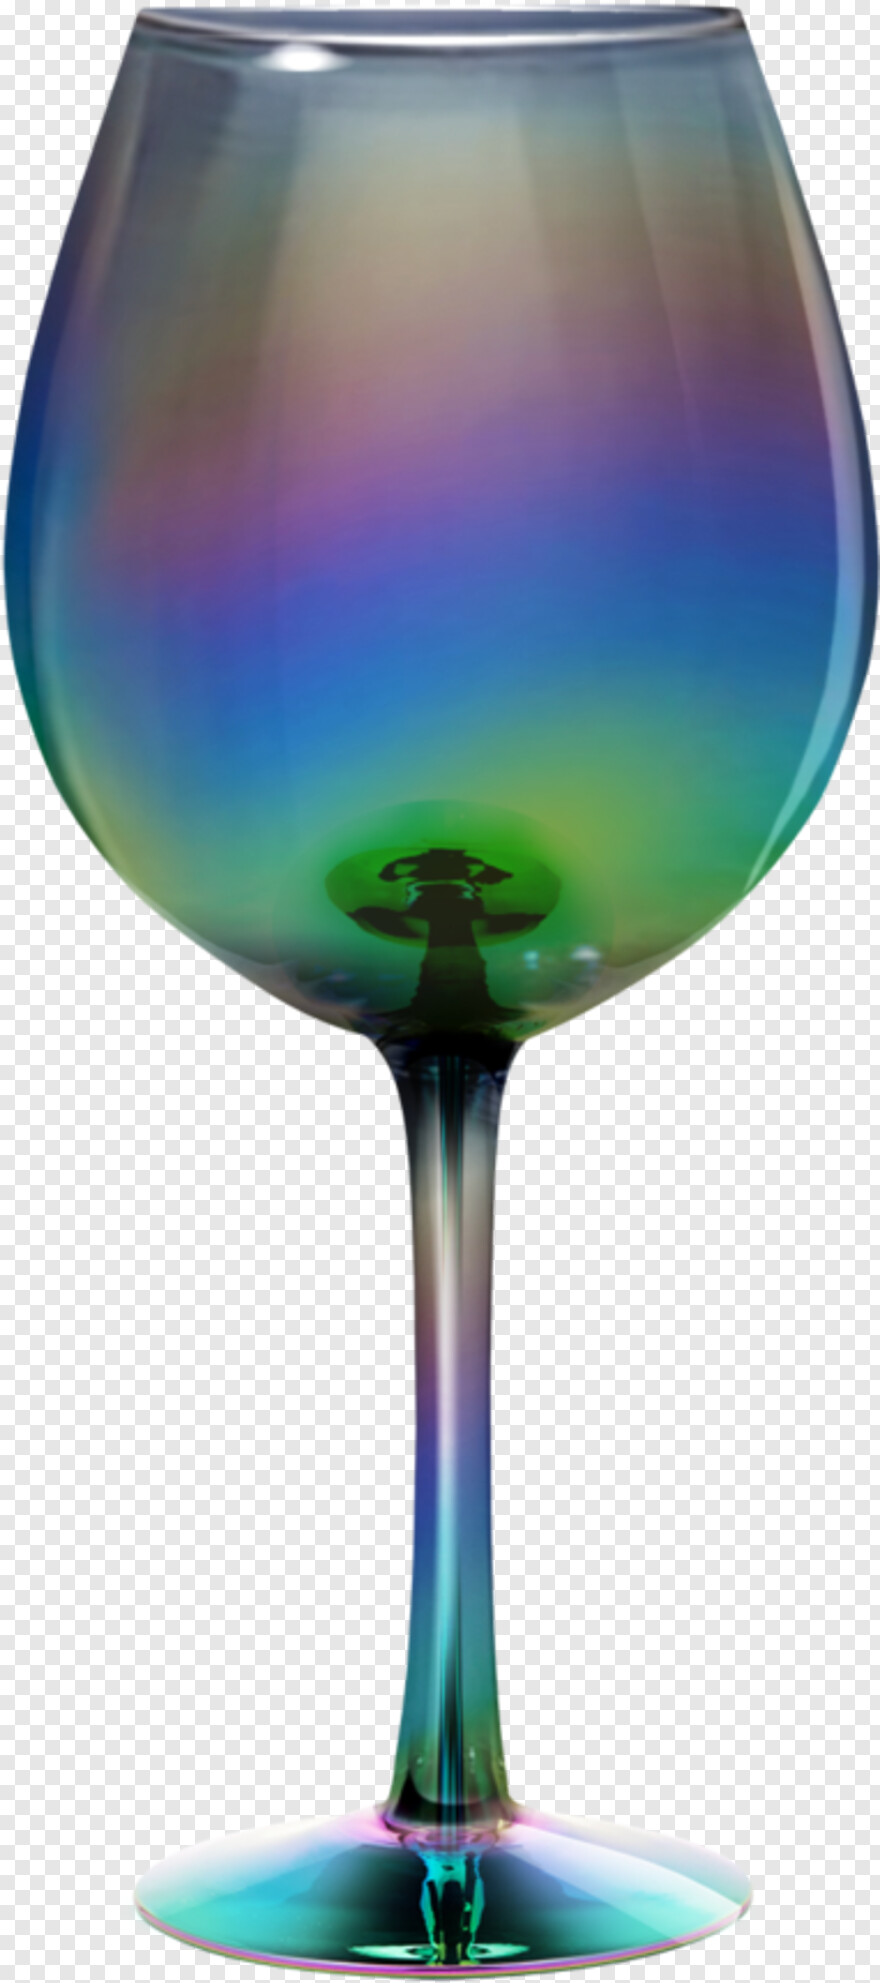 wine-glass # 795574